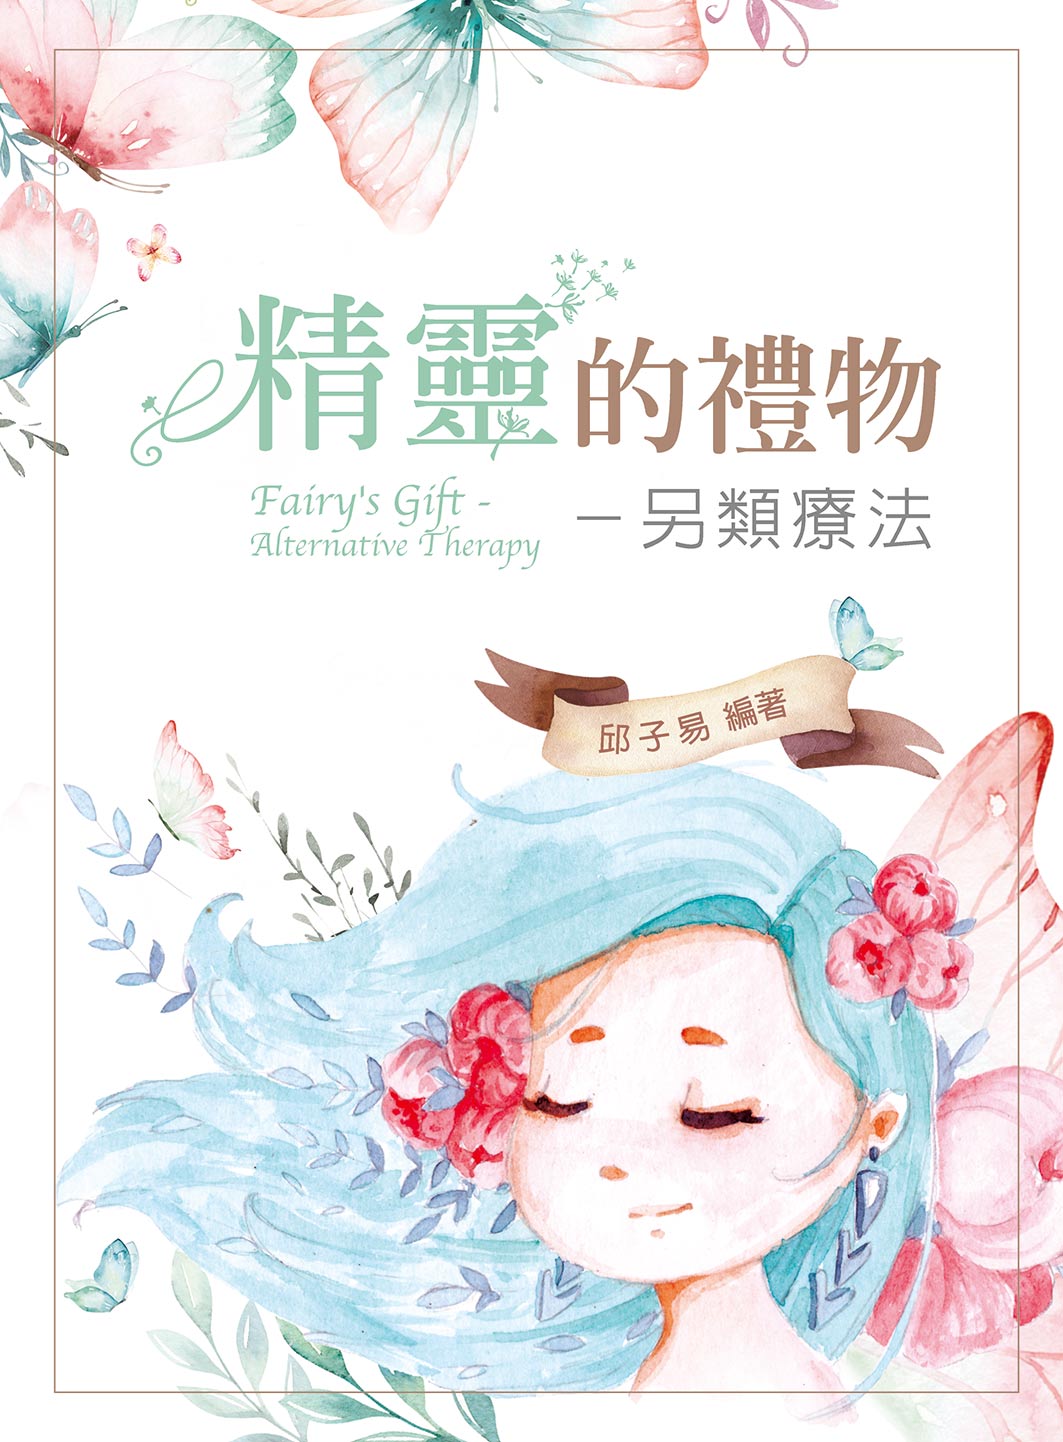 大專教科書、高中職教科書的提供者- 歡迎光臨新文京開發出版